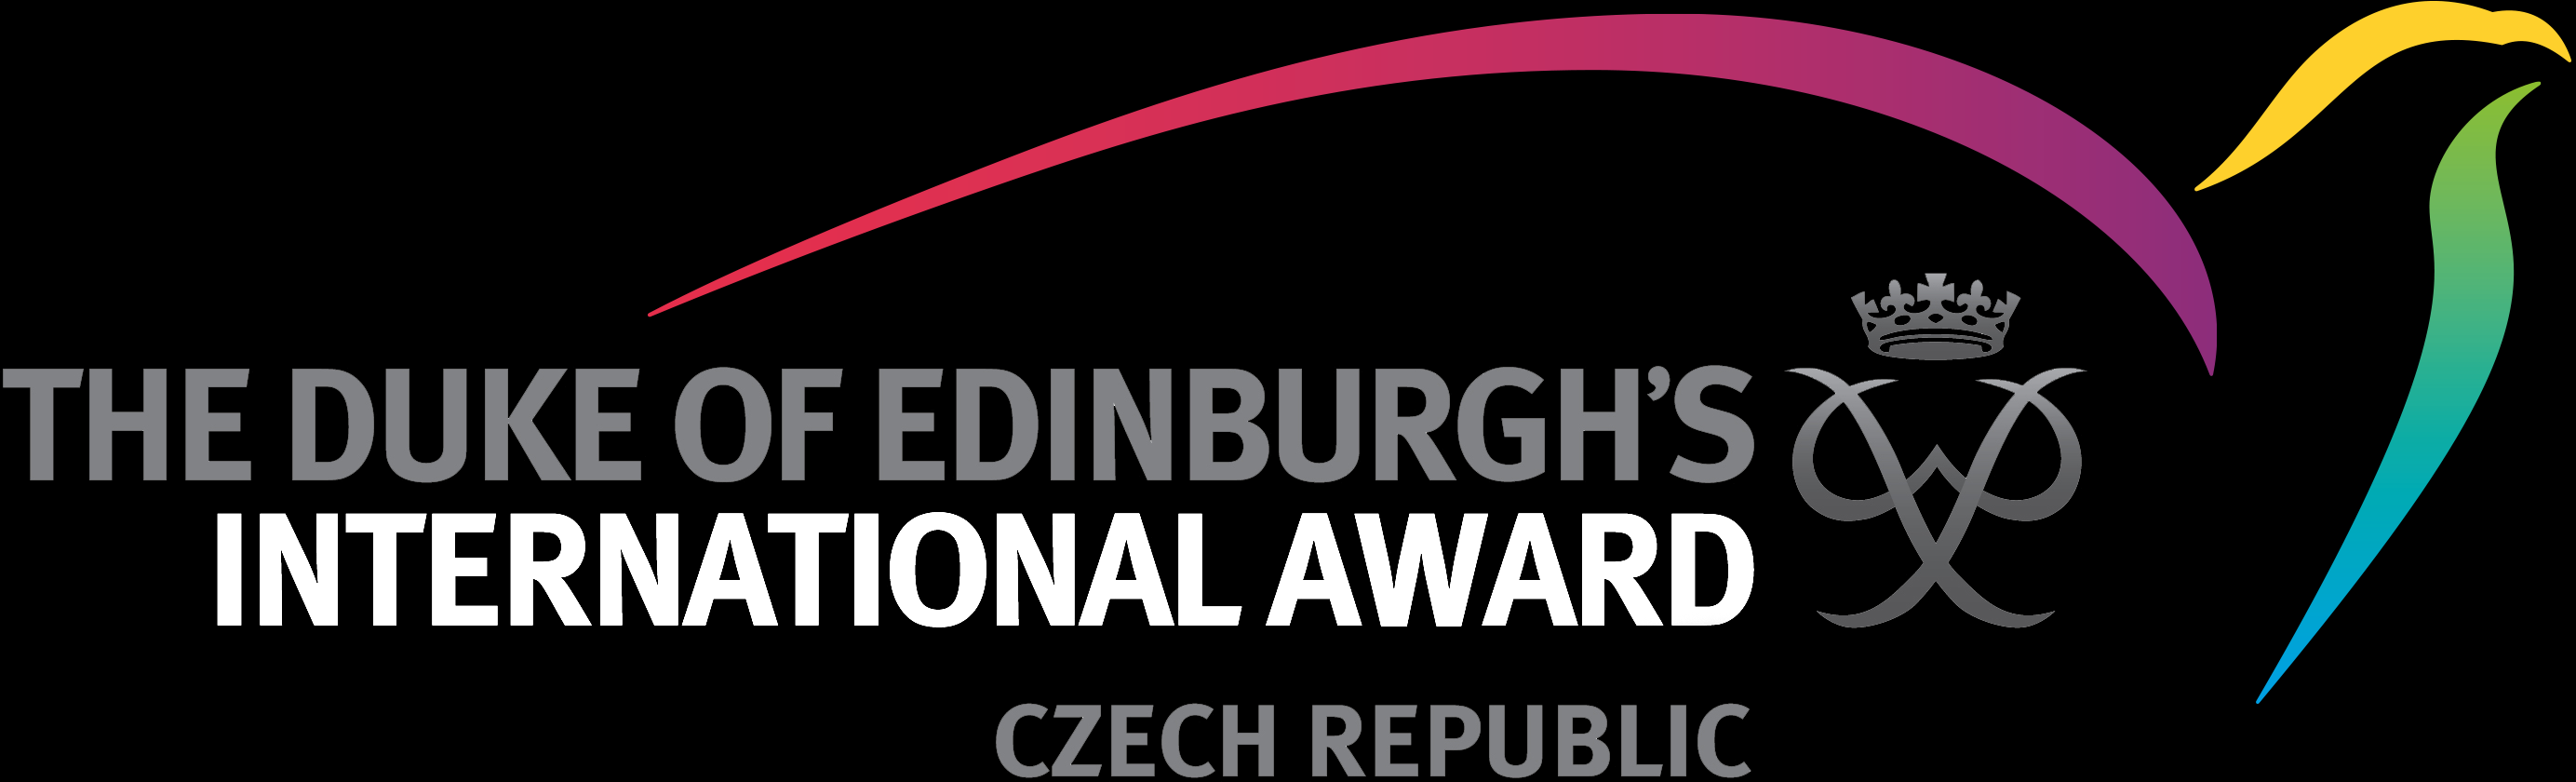 Mezinárodní cena vévody z Edinburghu | DofE